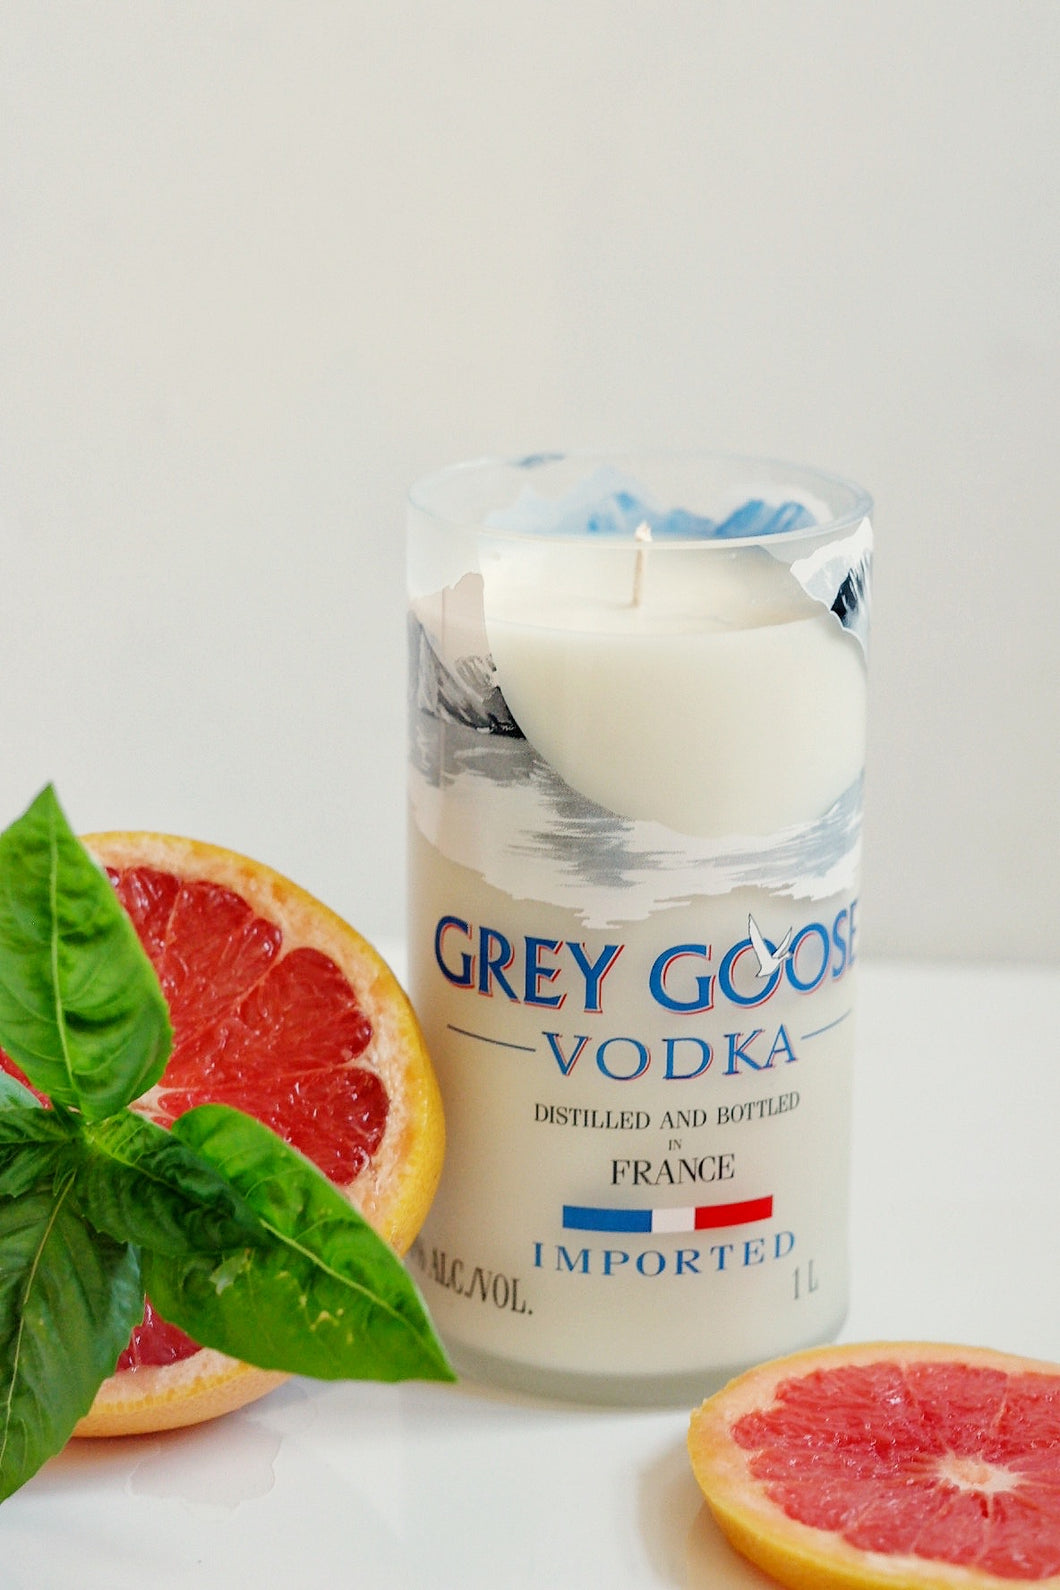 Grey Goose Vodka Liquor Bottle Candle - Candleholic Shop